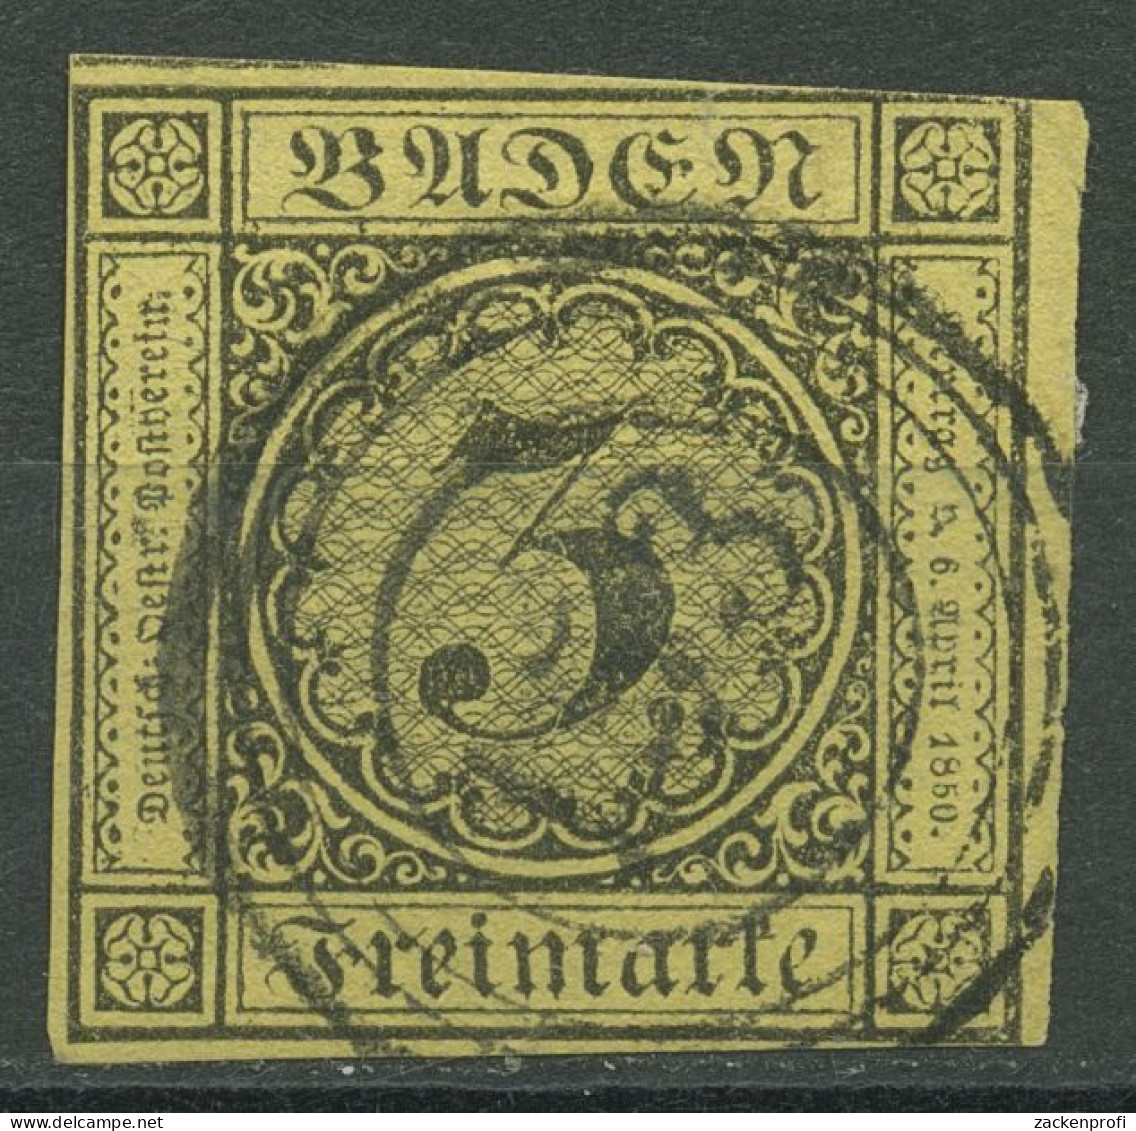 Baden 1851 3 Kreuzer Auf Gelb 2 B Mit Nr.-Stpl. 153 WALDSHUT - Usados